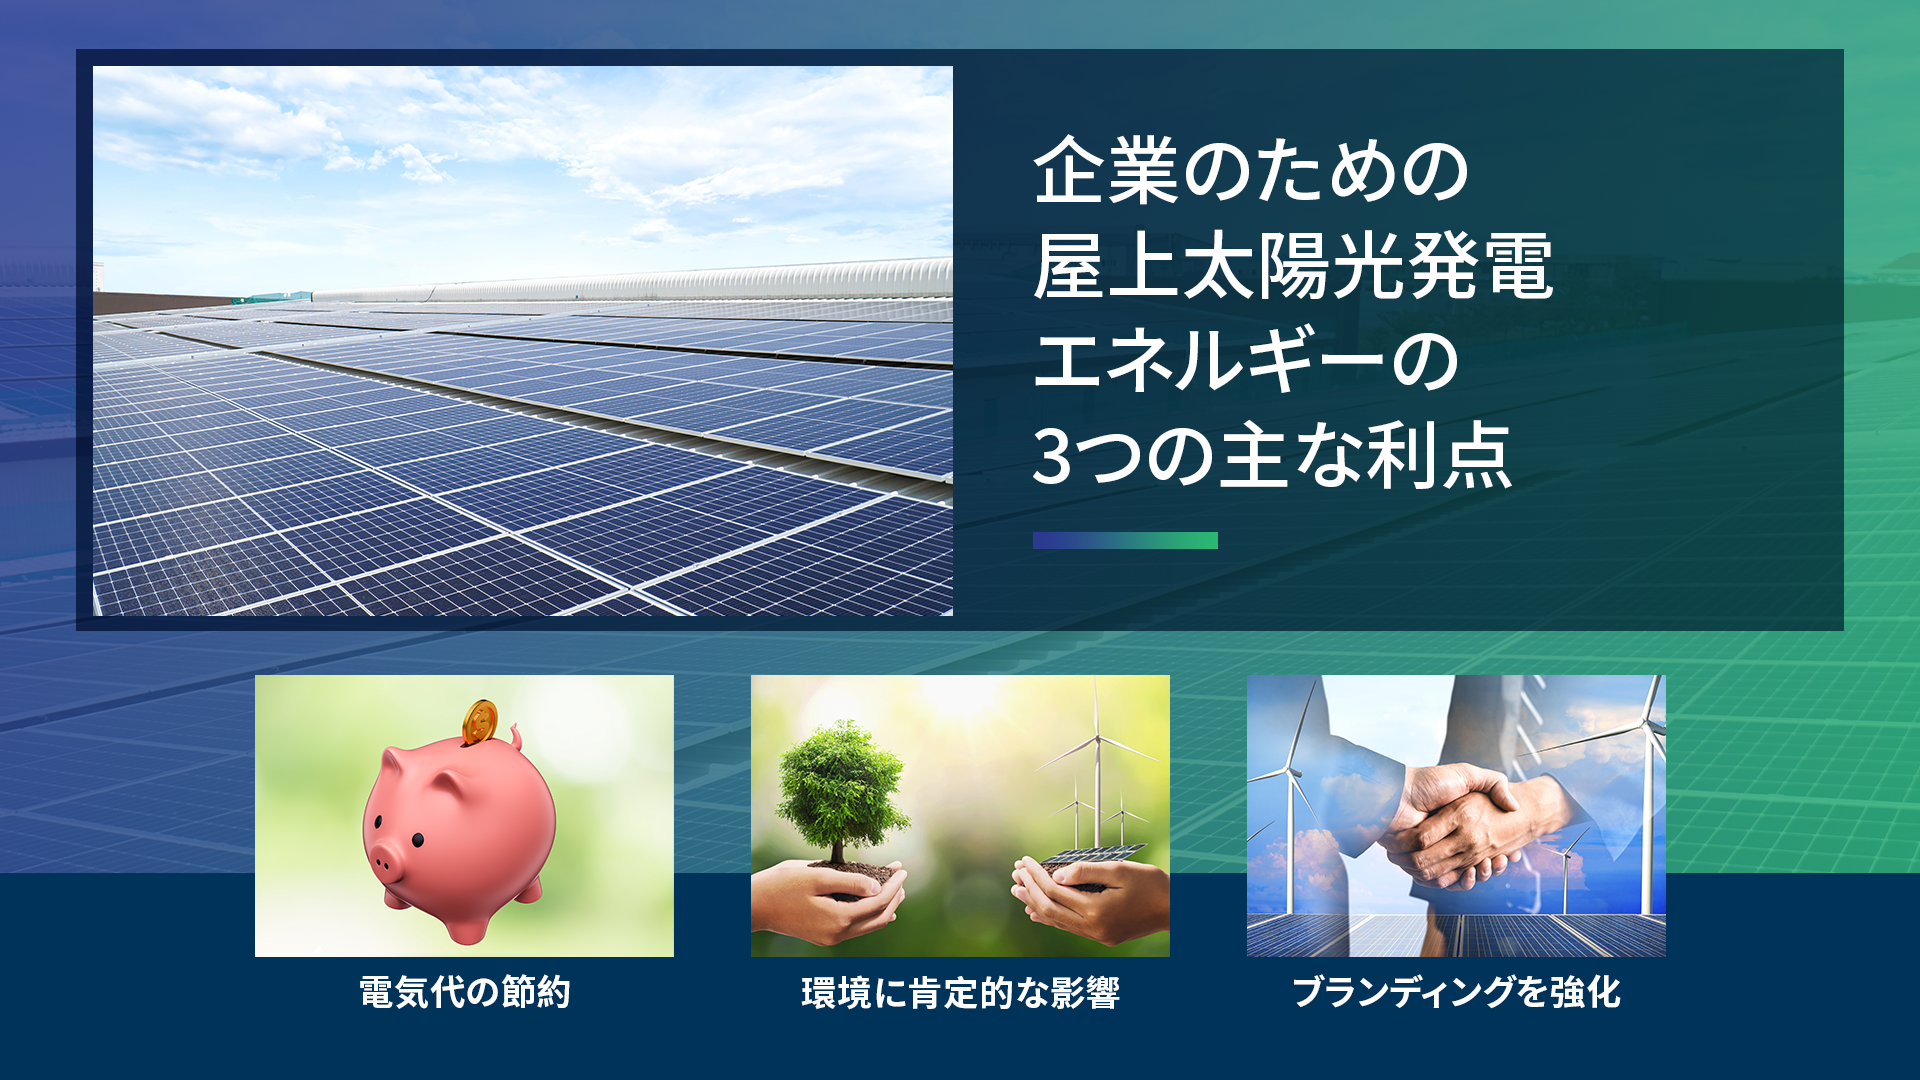 企業のための屋上太陽光発電エネルギーの3つの主な利点